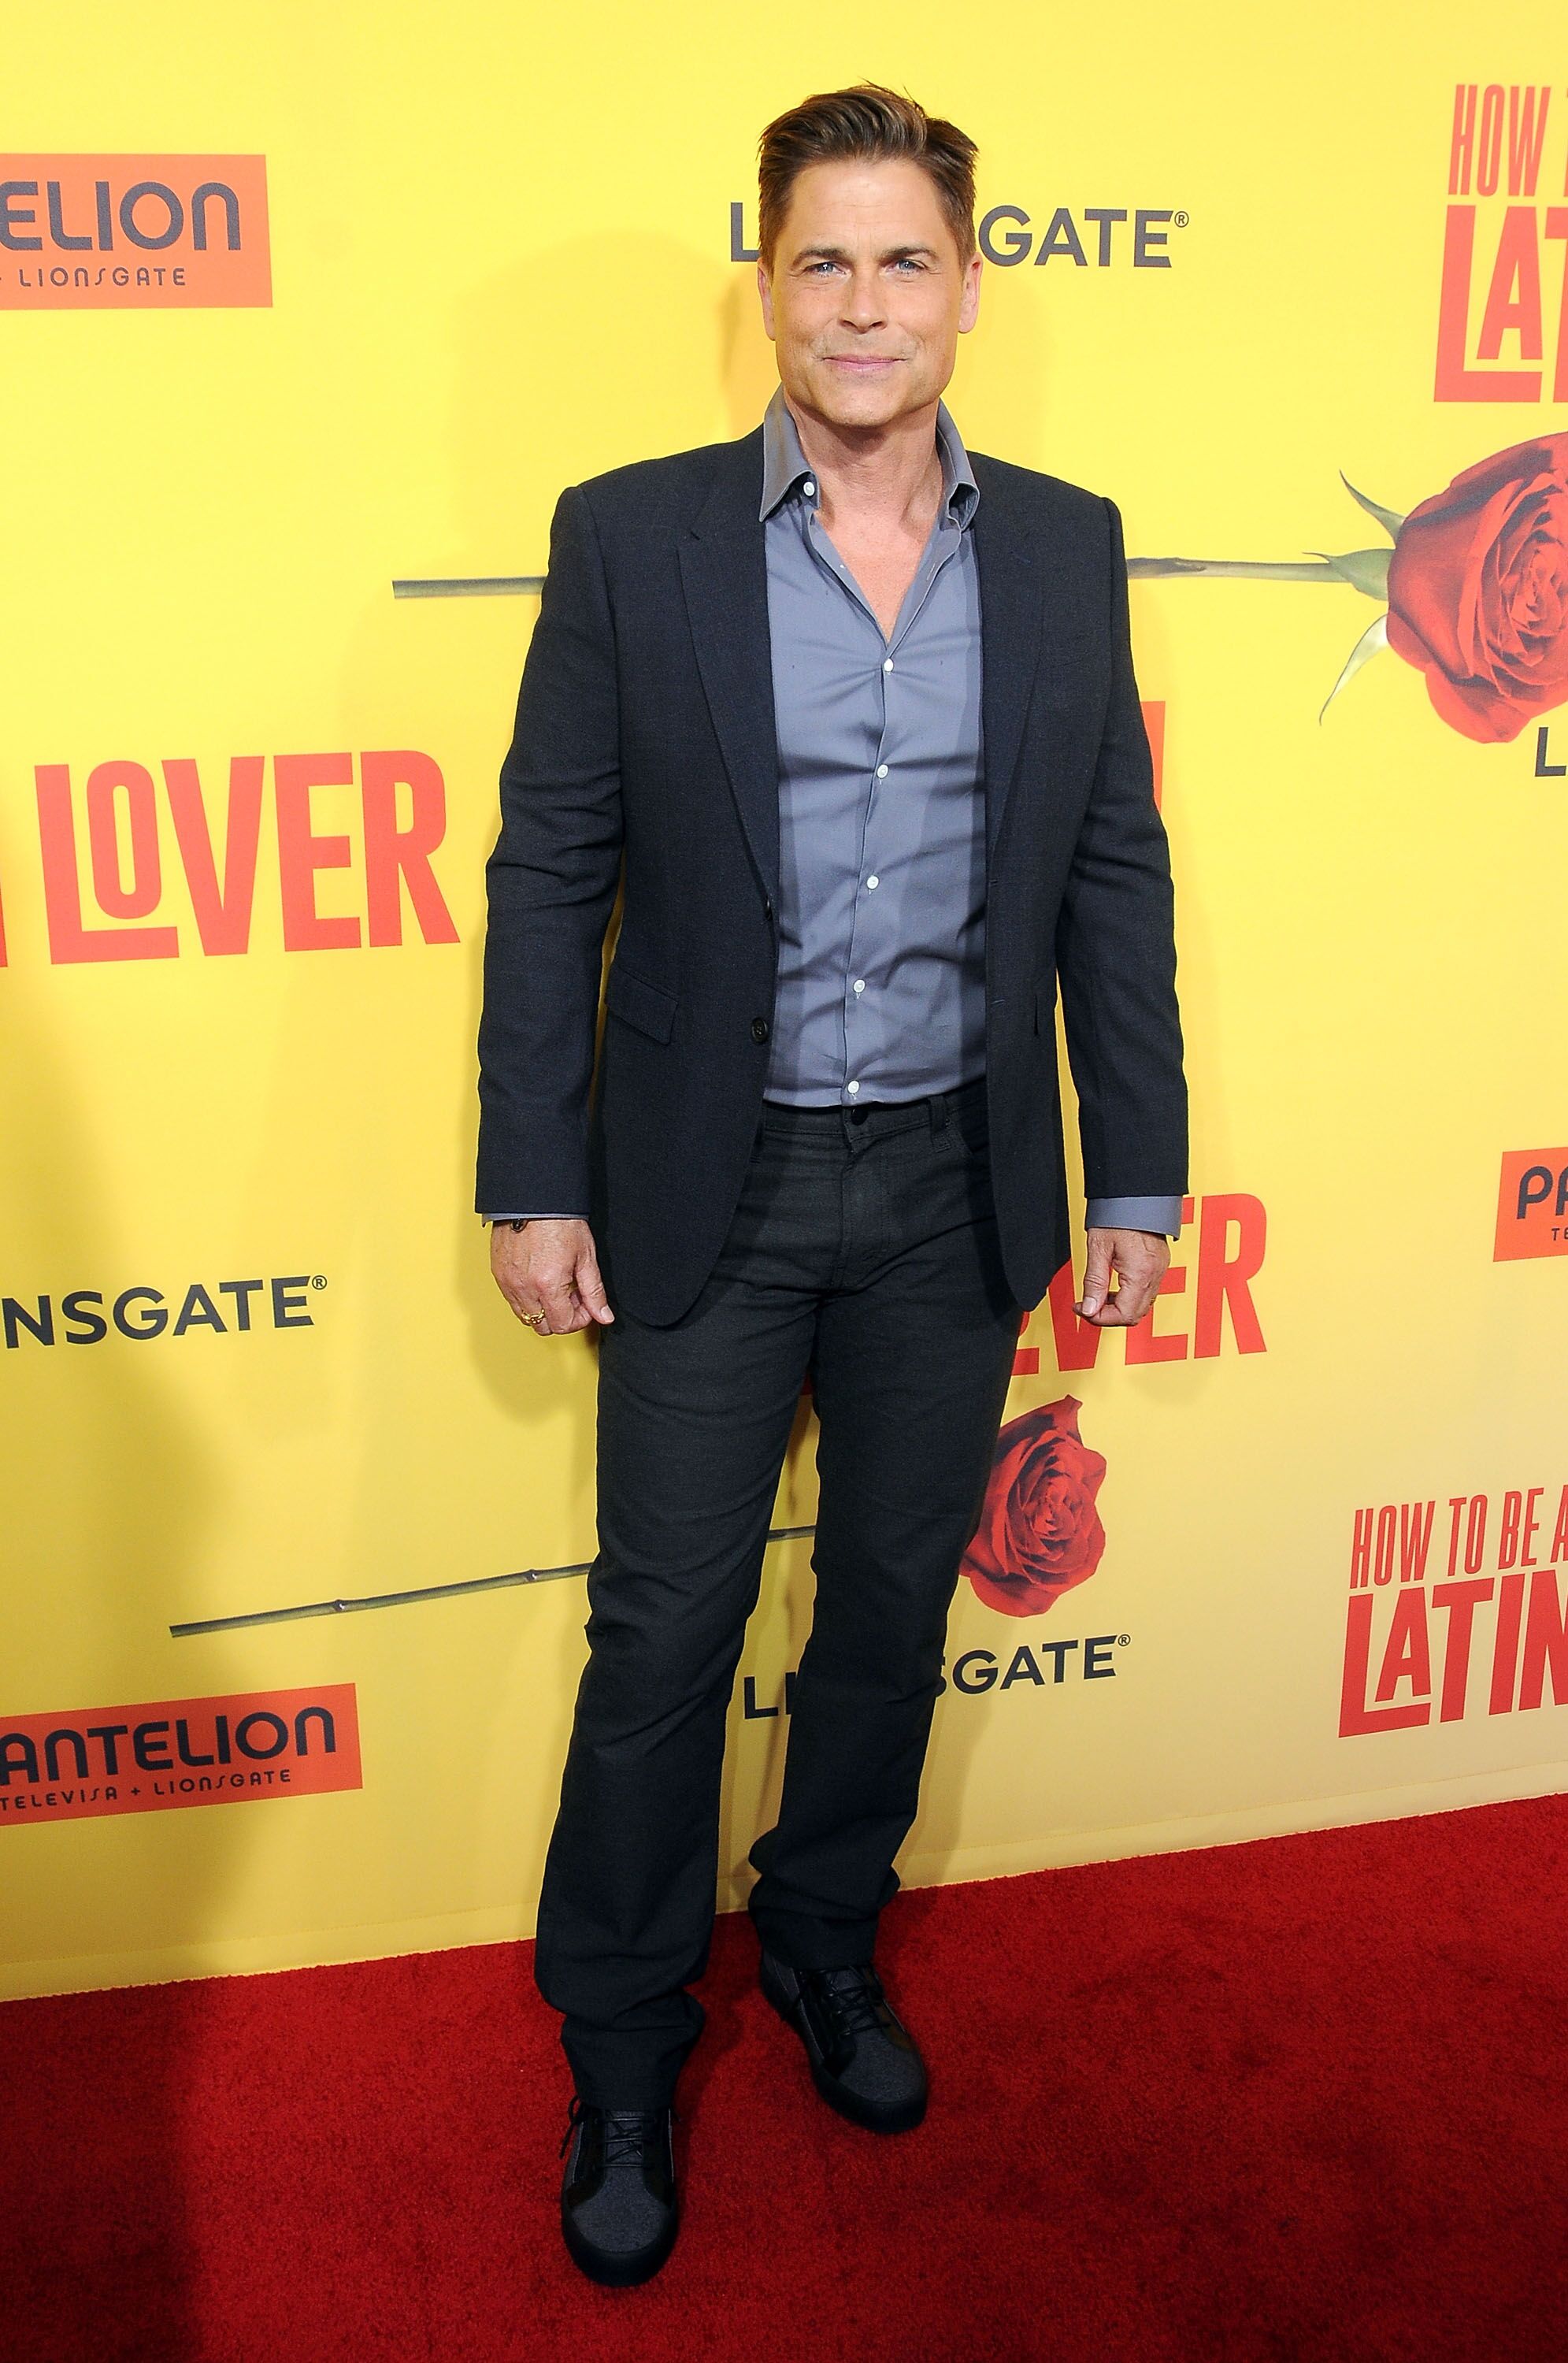 Rob Lowe assiste à la première de Pantelion Films''How To Be A Latin Lover'' le 26 avril 2017 à Hollywood, Californie. | Source : Getty Images